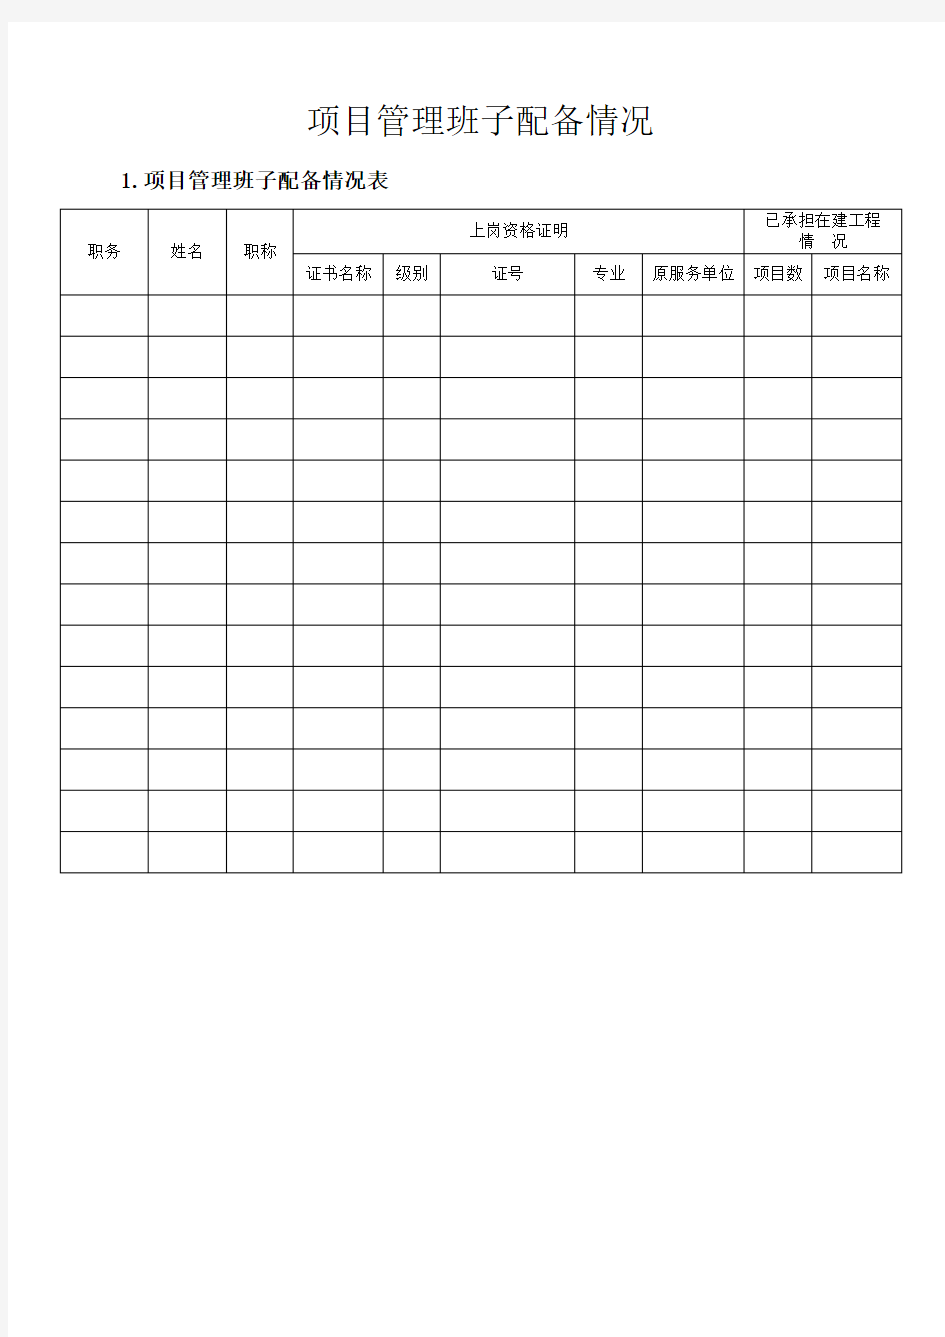 (完整版)项目管理班子人员配备表及相关说明